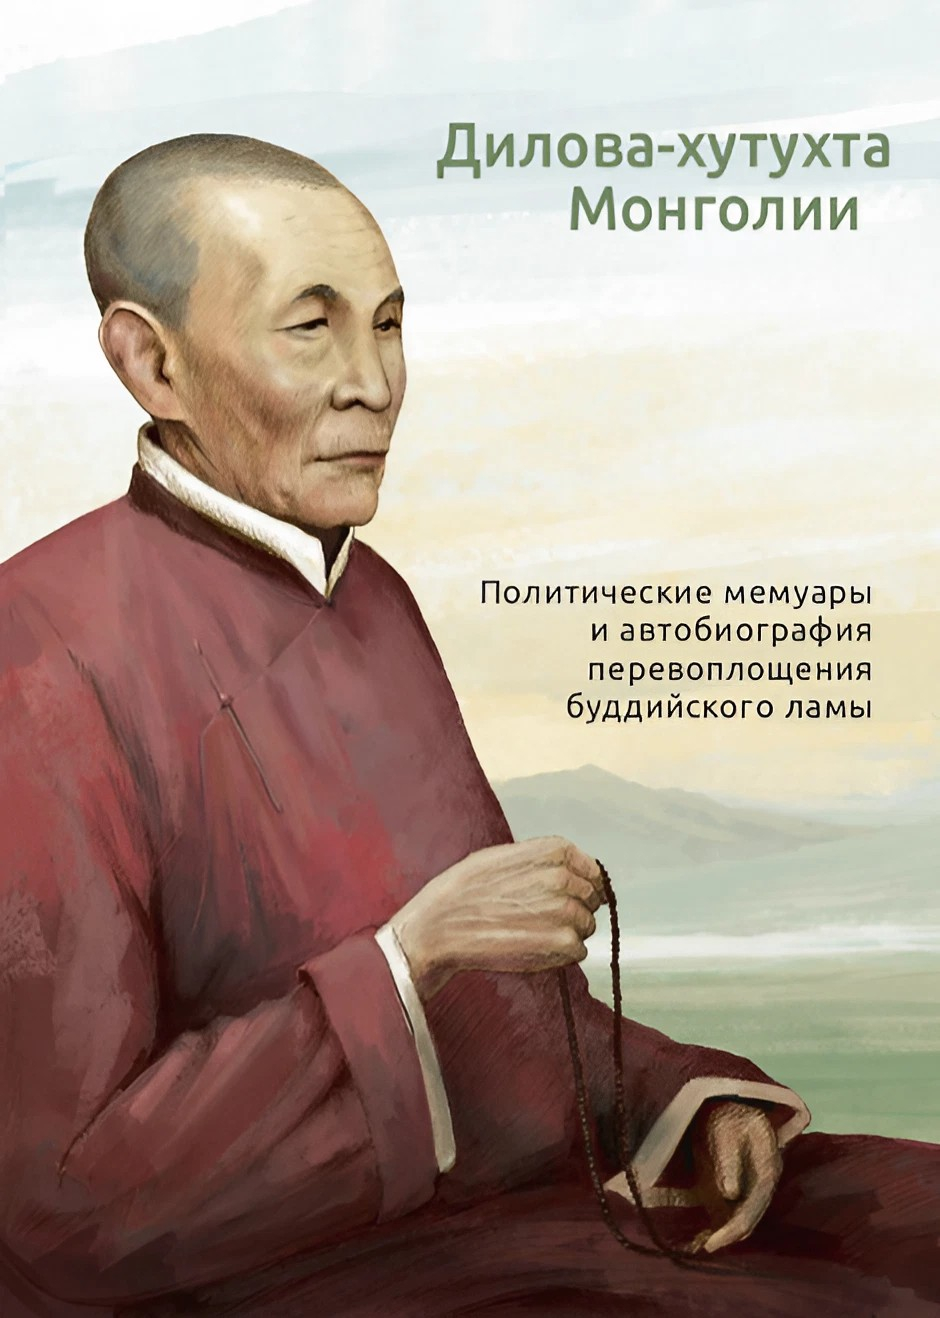 Дилова-хутухта Монголии